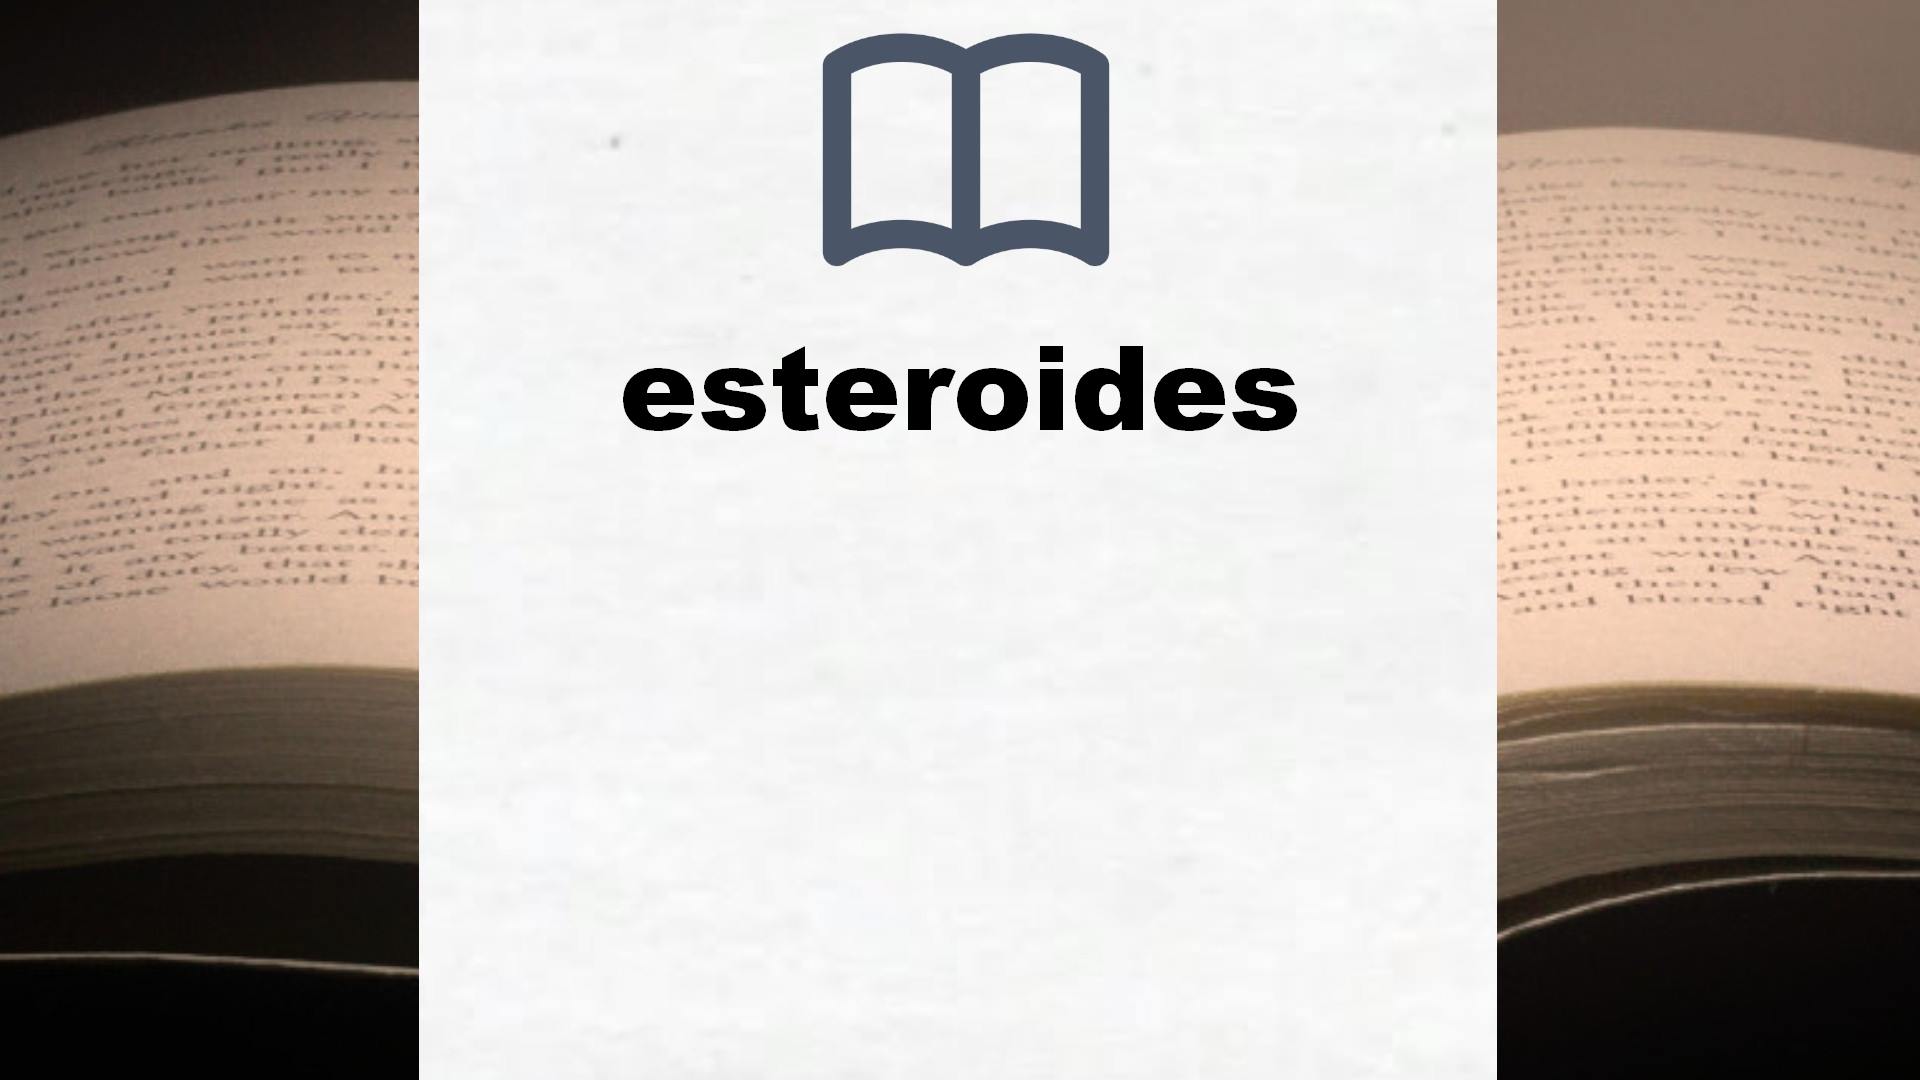 Libros sobre esteroides